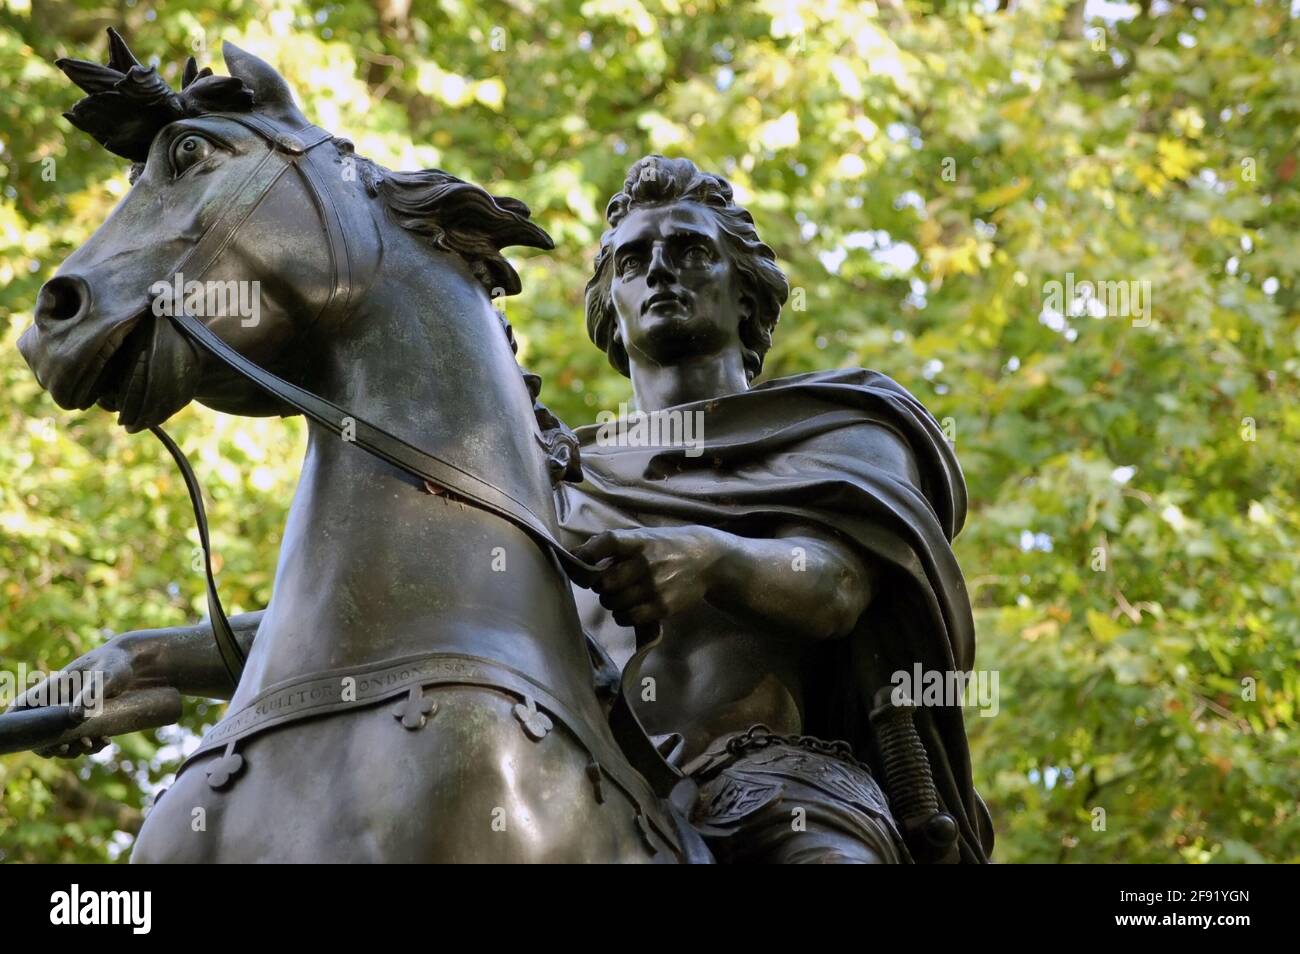 Eine beeindruckende Bronzestatue von König Wilhelm III. Auf seinem Pferd. Zentrum des St. James' Square in Westminster, London. Statue auf der öffentlichen Ausstellung für über 100 Stockfoto